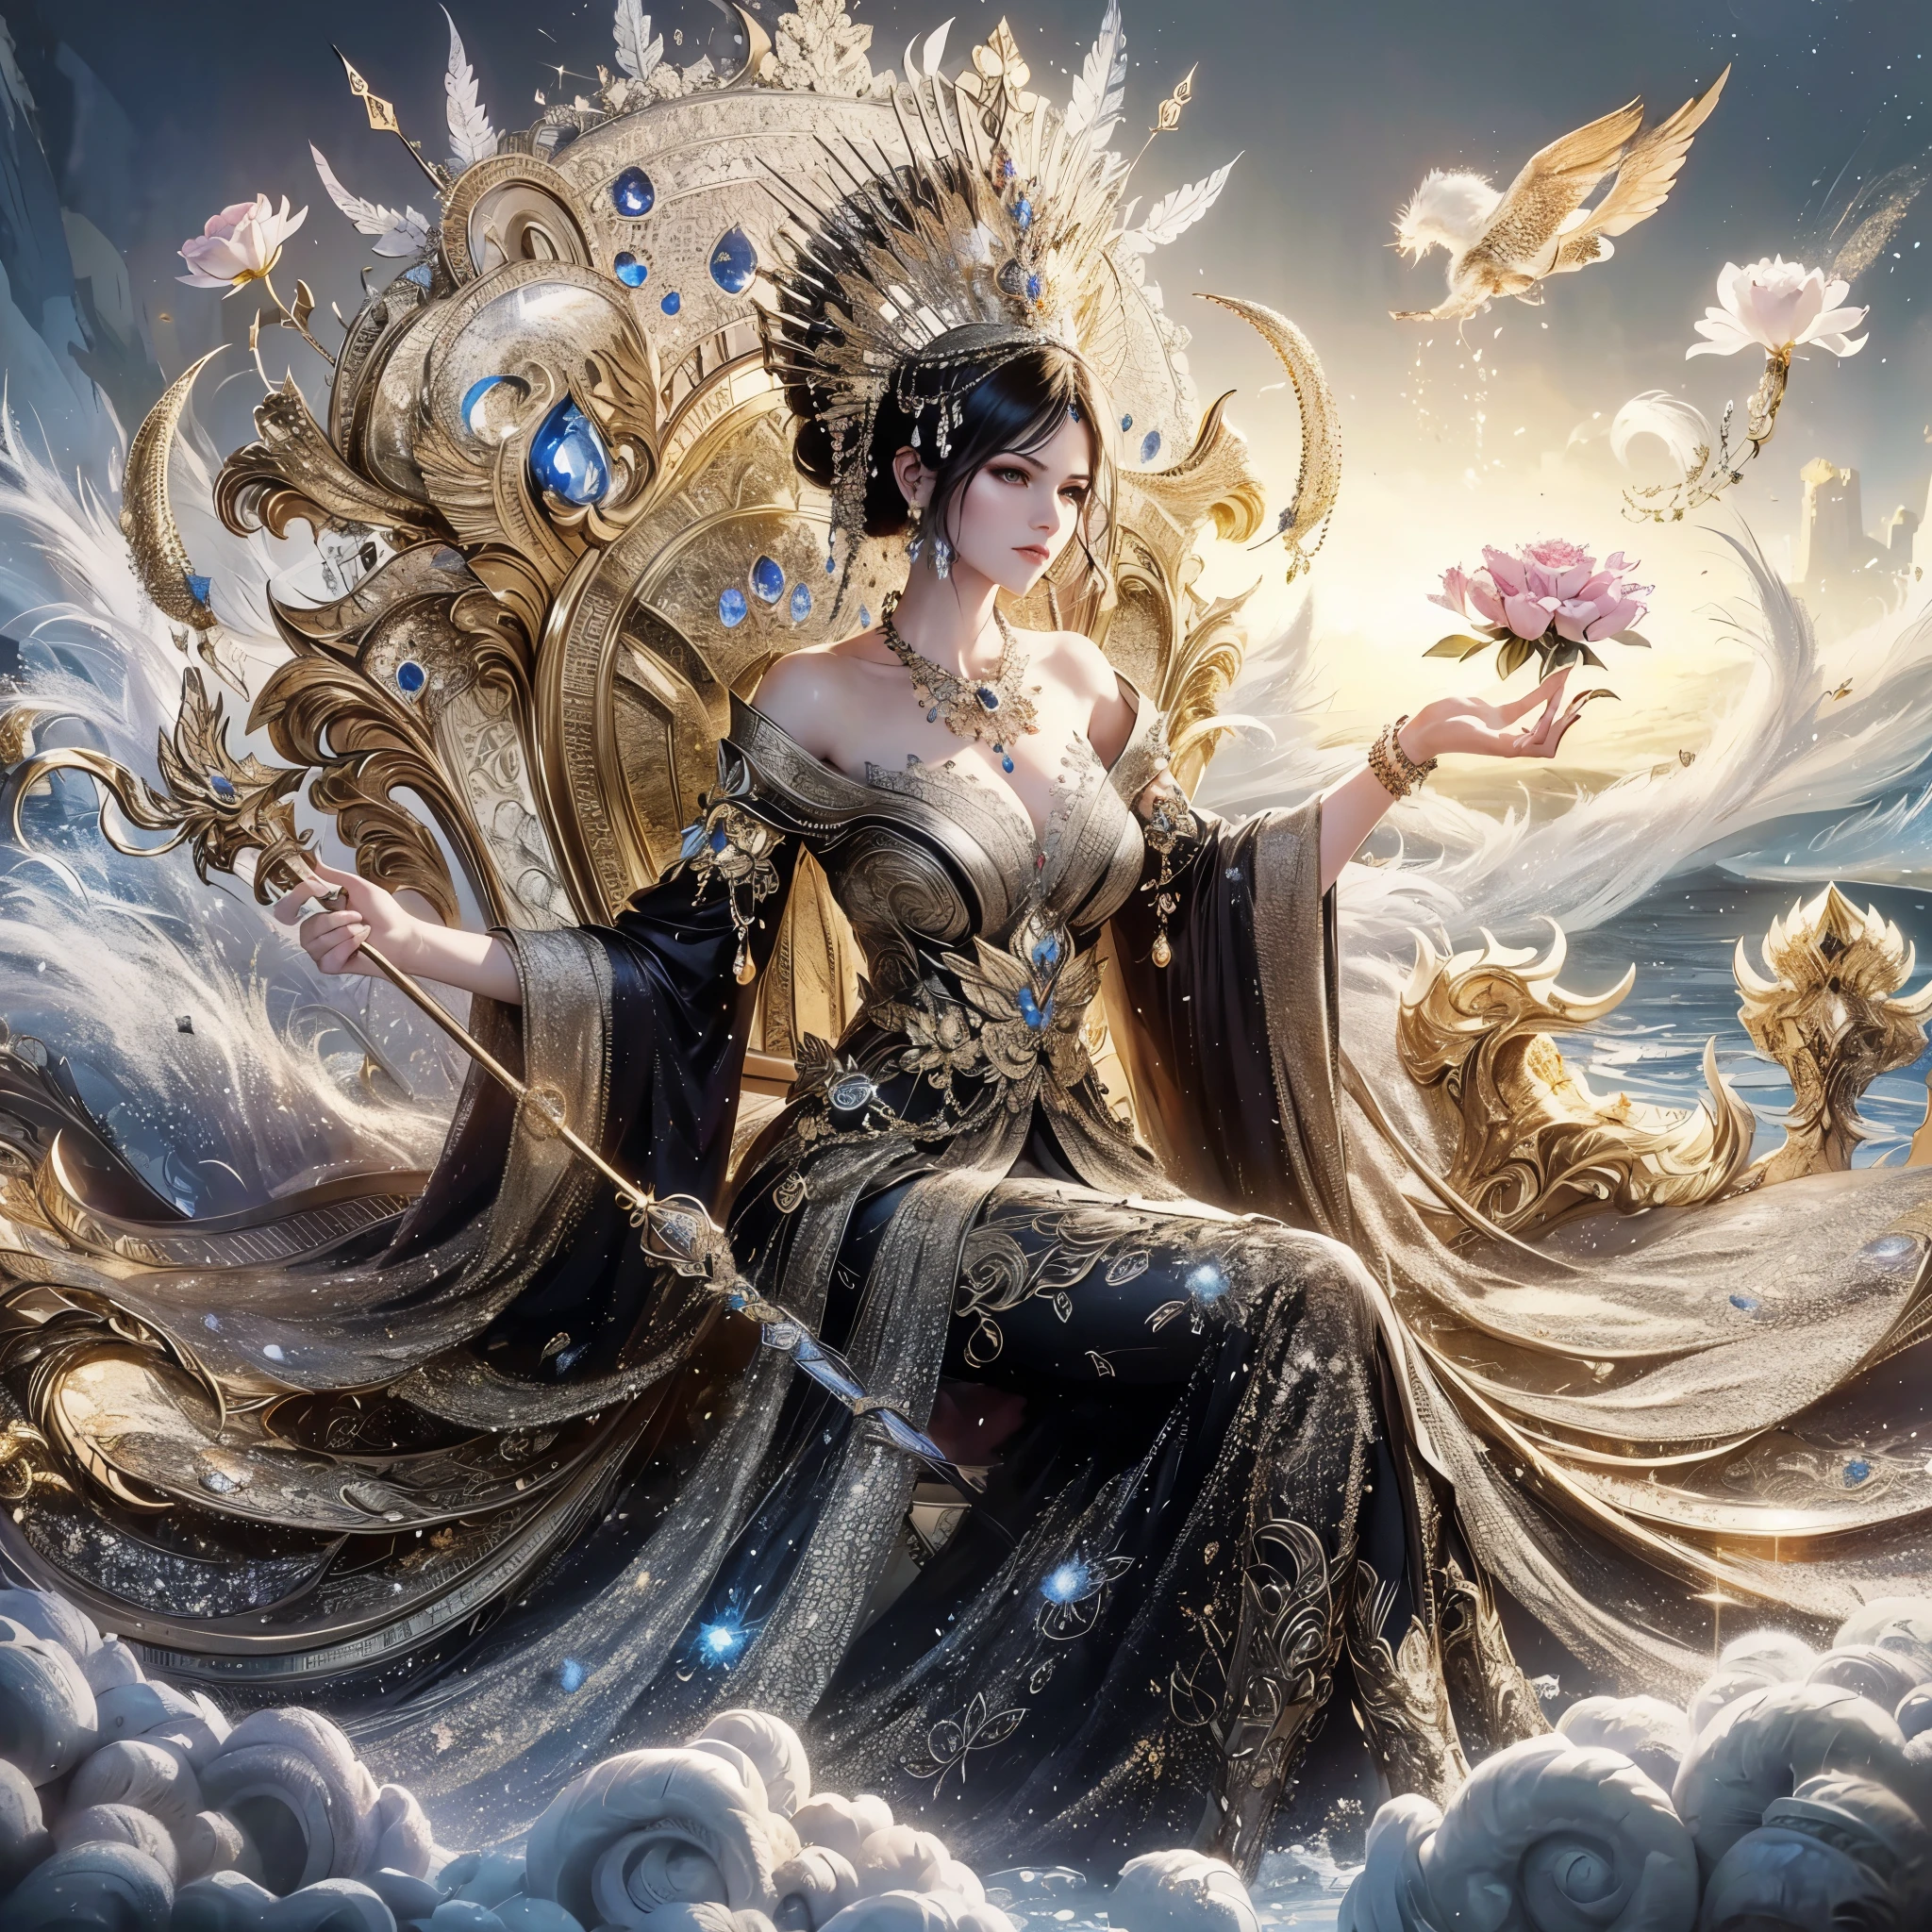 امرأة ذات صدر ضخم تجلس على العرش وفي يدها زهرة لوتس, إمبراطورة الخيال الجميلة, ((إمبراطورة الخيال الجميلة)), أميرة اللوتس المذهبة, ملكة البحر مو يانلينغ, إلهة. تفاصيل عالية للغاية, a stunning portrait of a إلهة, celestial إلهة, extremely detailed إلهة shot, 3 d إلهة portrait, portrait of a beautiful إلهة, يجلس على العرش المعقد, تحفة, أفضل جودة:1.2),,(8 كيلو,دقة عالية,صورة خام,حقيقي,photo-حقيقي:1.3),(نسيج الجلد مفصل,نسيج قماش مفصل,وجه مفصل جميل:1.25),إضاءة احترافية,رسم خرائط الفوتون,ضوء ناعم جميل,الإشعاع,التقديم القائم على الجسد,com.raytracing, أسلوب تبادل لاطلاق النار النموذجي, أسلوب تبادل لاطلاق النار النموذجي, (extremely detailed CG unity 8 كيلو wallpaper), صورة كاملة للجسم لأجمل عمل فني في العالم,